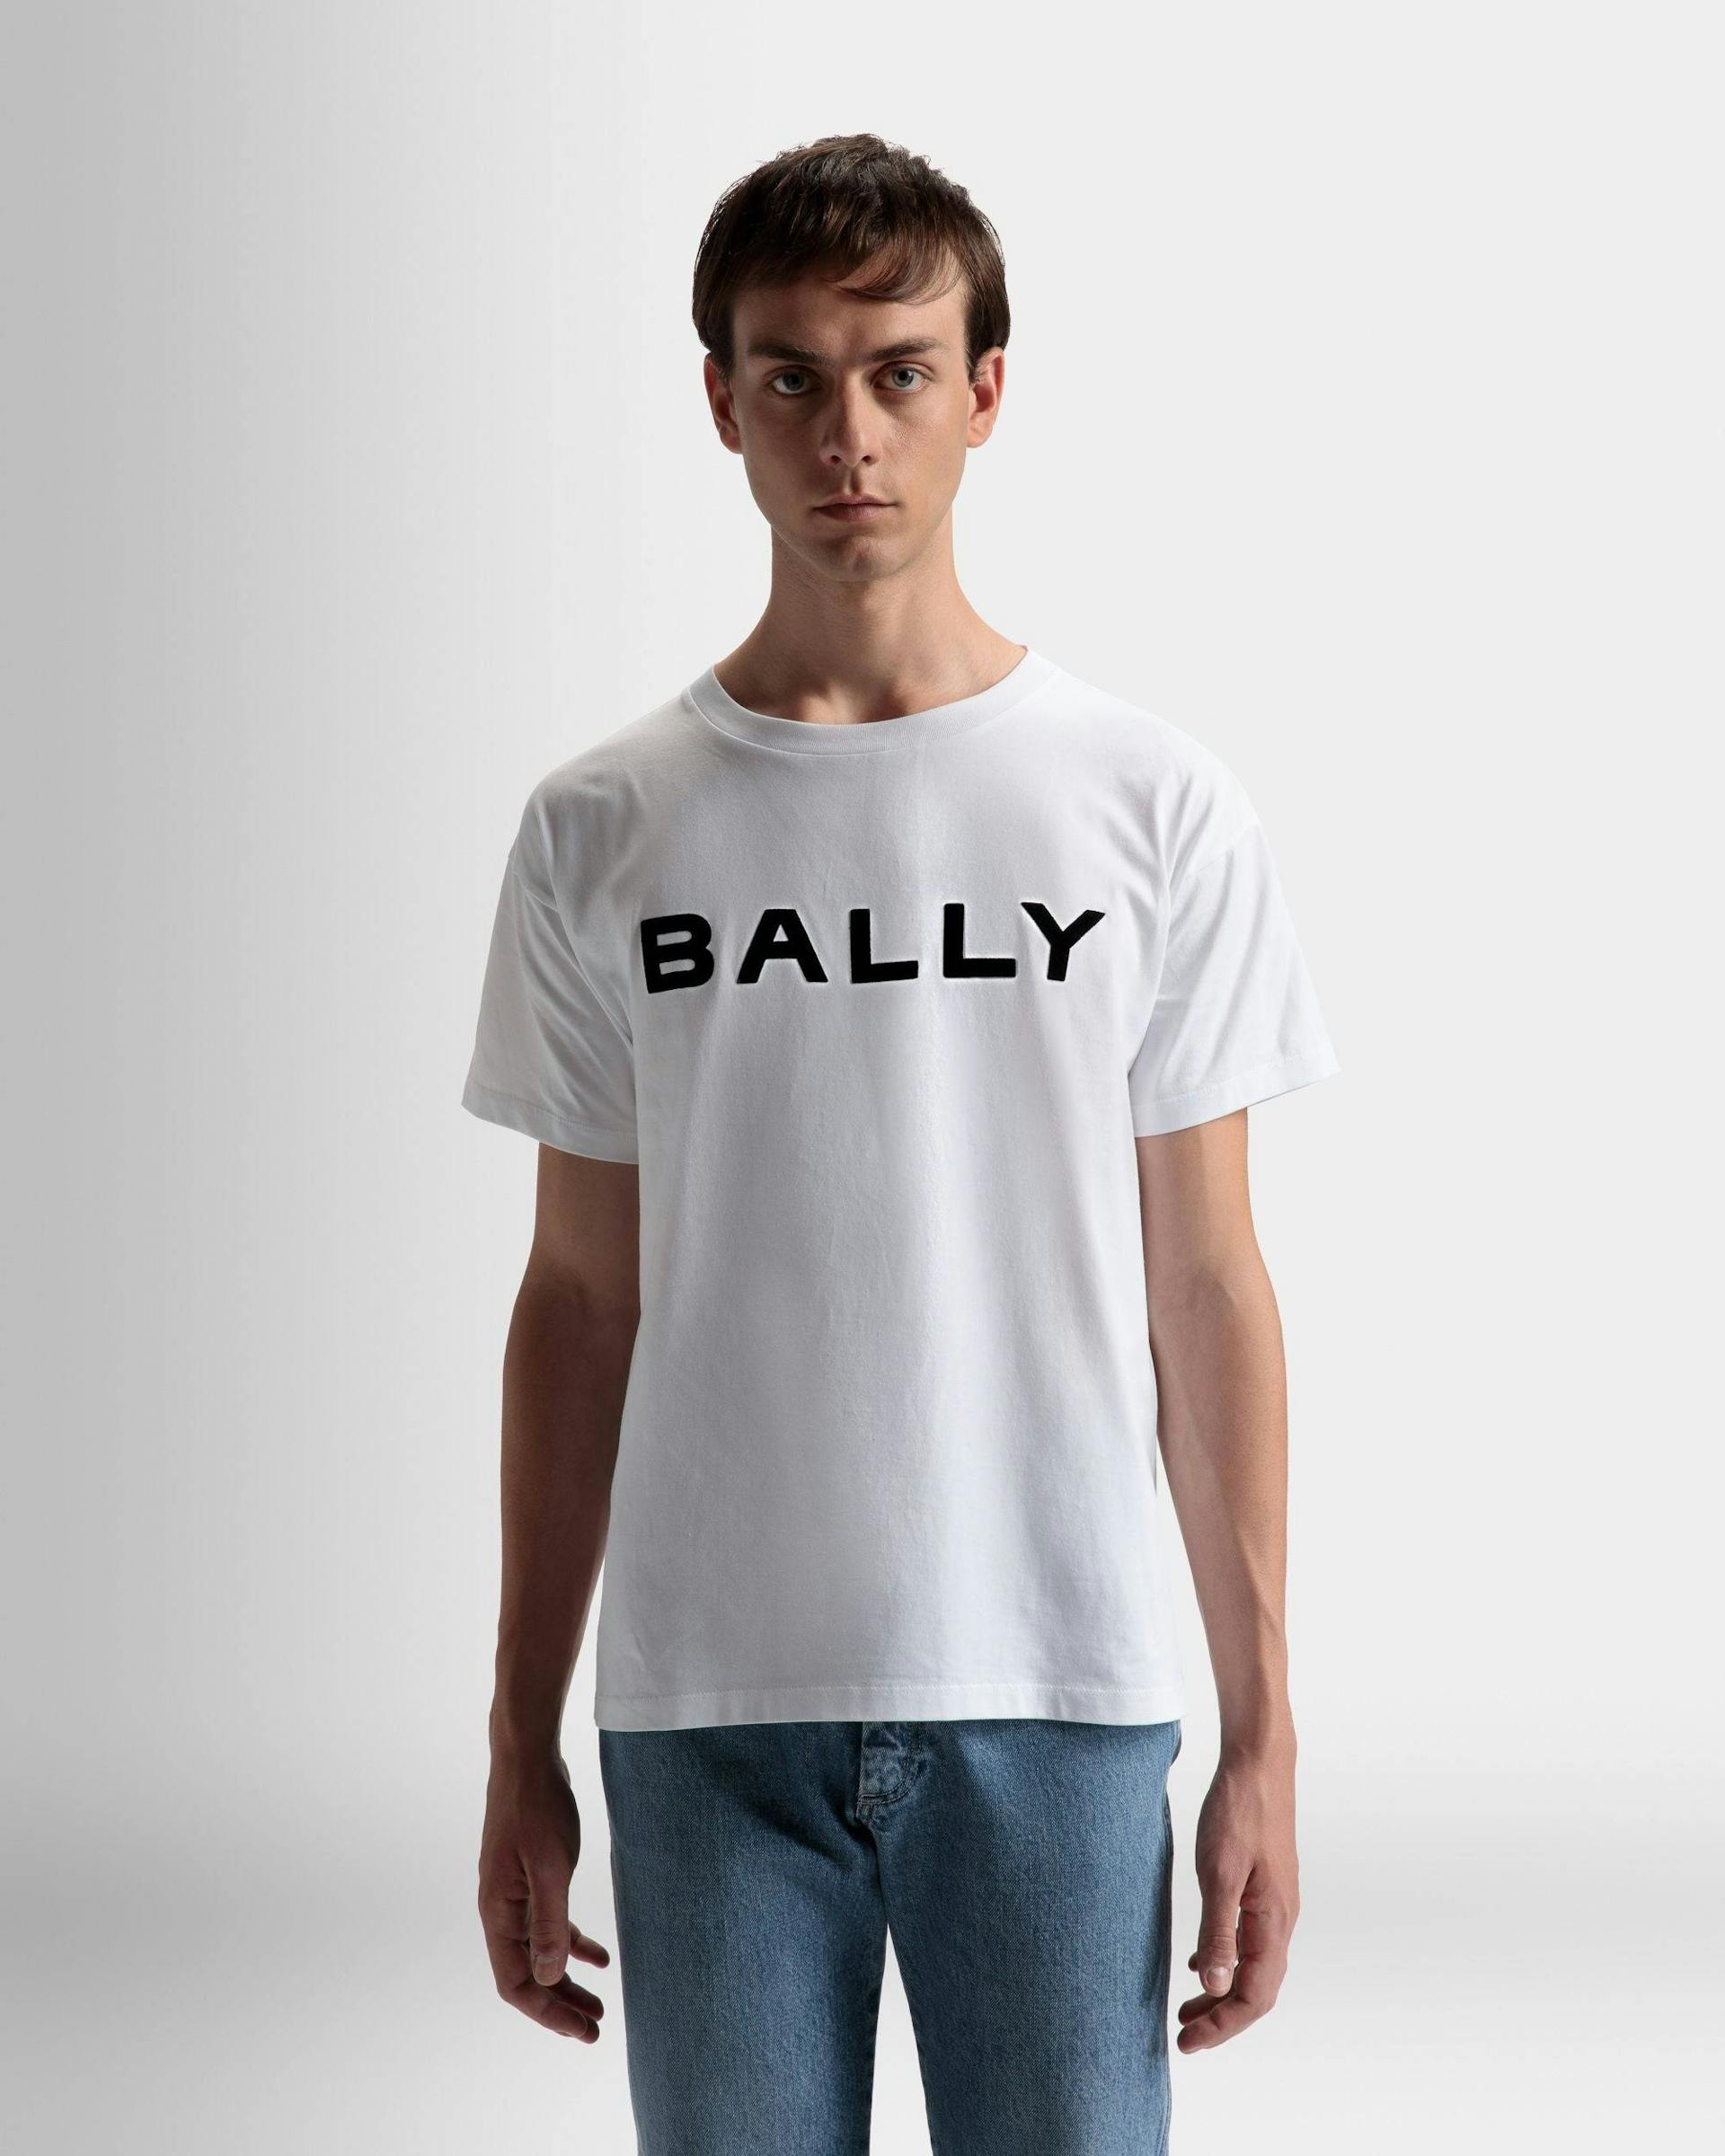 T-Shirt Mit Logo Aus Weißer Baumwolle - Herren - Bally - 03